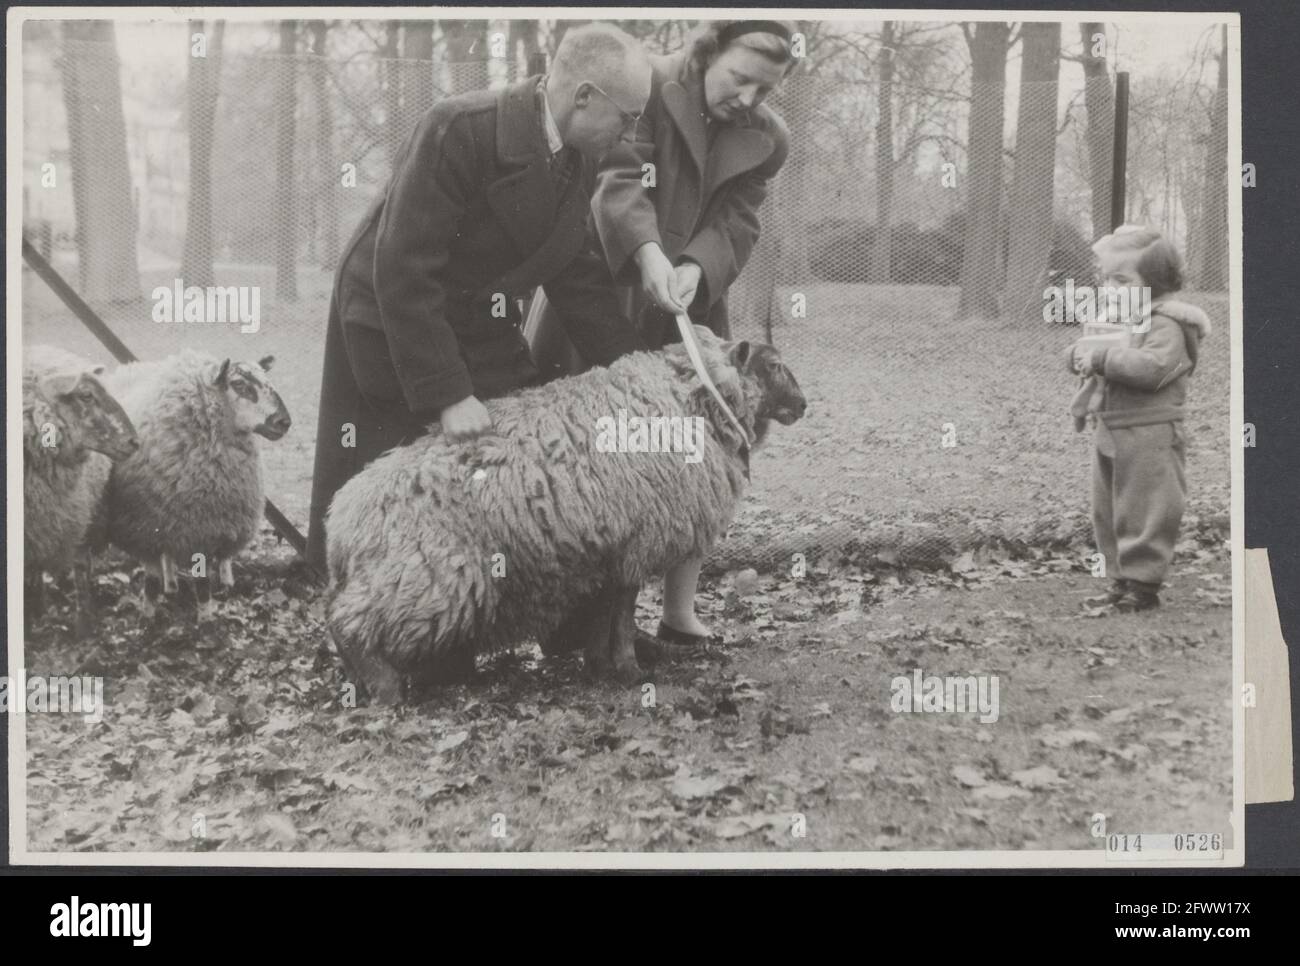 Im Palast von Soestdijk wurden Prinzessin Juliana drei Schafe von Herrn T.R.A.W. überreicht Wenink. Sie waren ein Geschenk der Wolf Club Dublin Boys Scouts. Die Schafe heißen Balou, Akela und Baghera. Die Prinzessin bindet ein schickes Band mit seinem Namen auf Baloo, während die kleine Prinzessin Margriet neugierig aufschaut, 14. Dezember 1945, Geschenke, Königshaus, Prinzessinnen, Schafe, Niederlande, Foto der Presseagentur des 20. Jahrhunderts, News to remember, Dokumentarfilm, historische Fotografie 1945-1990, visuelle Geschichten, Menschliche Geschichte des zwanzigsten Jahrhunderts, Momente in der Zeit festzuhalten Stockfoto